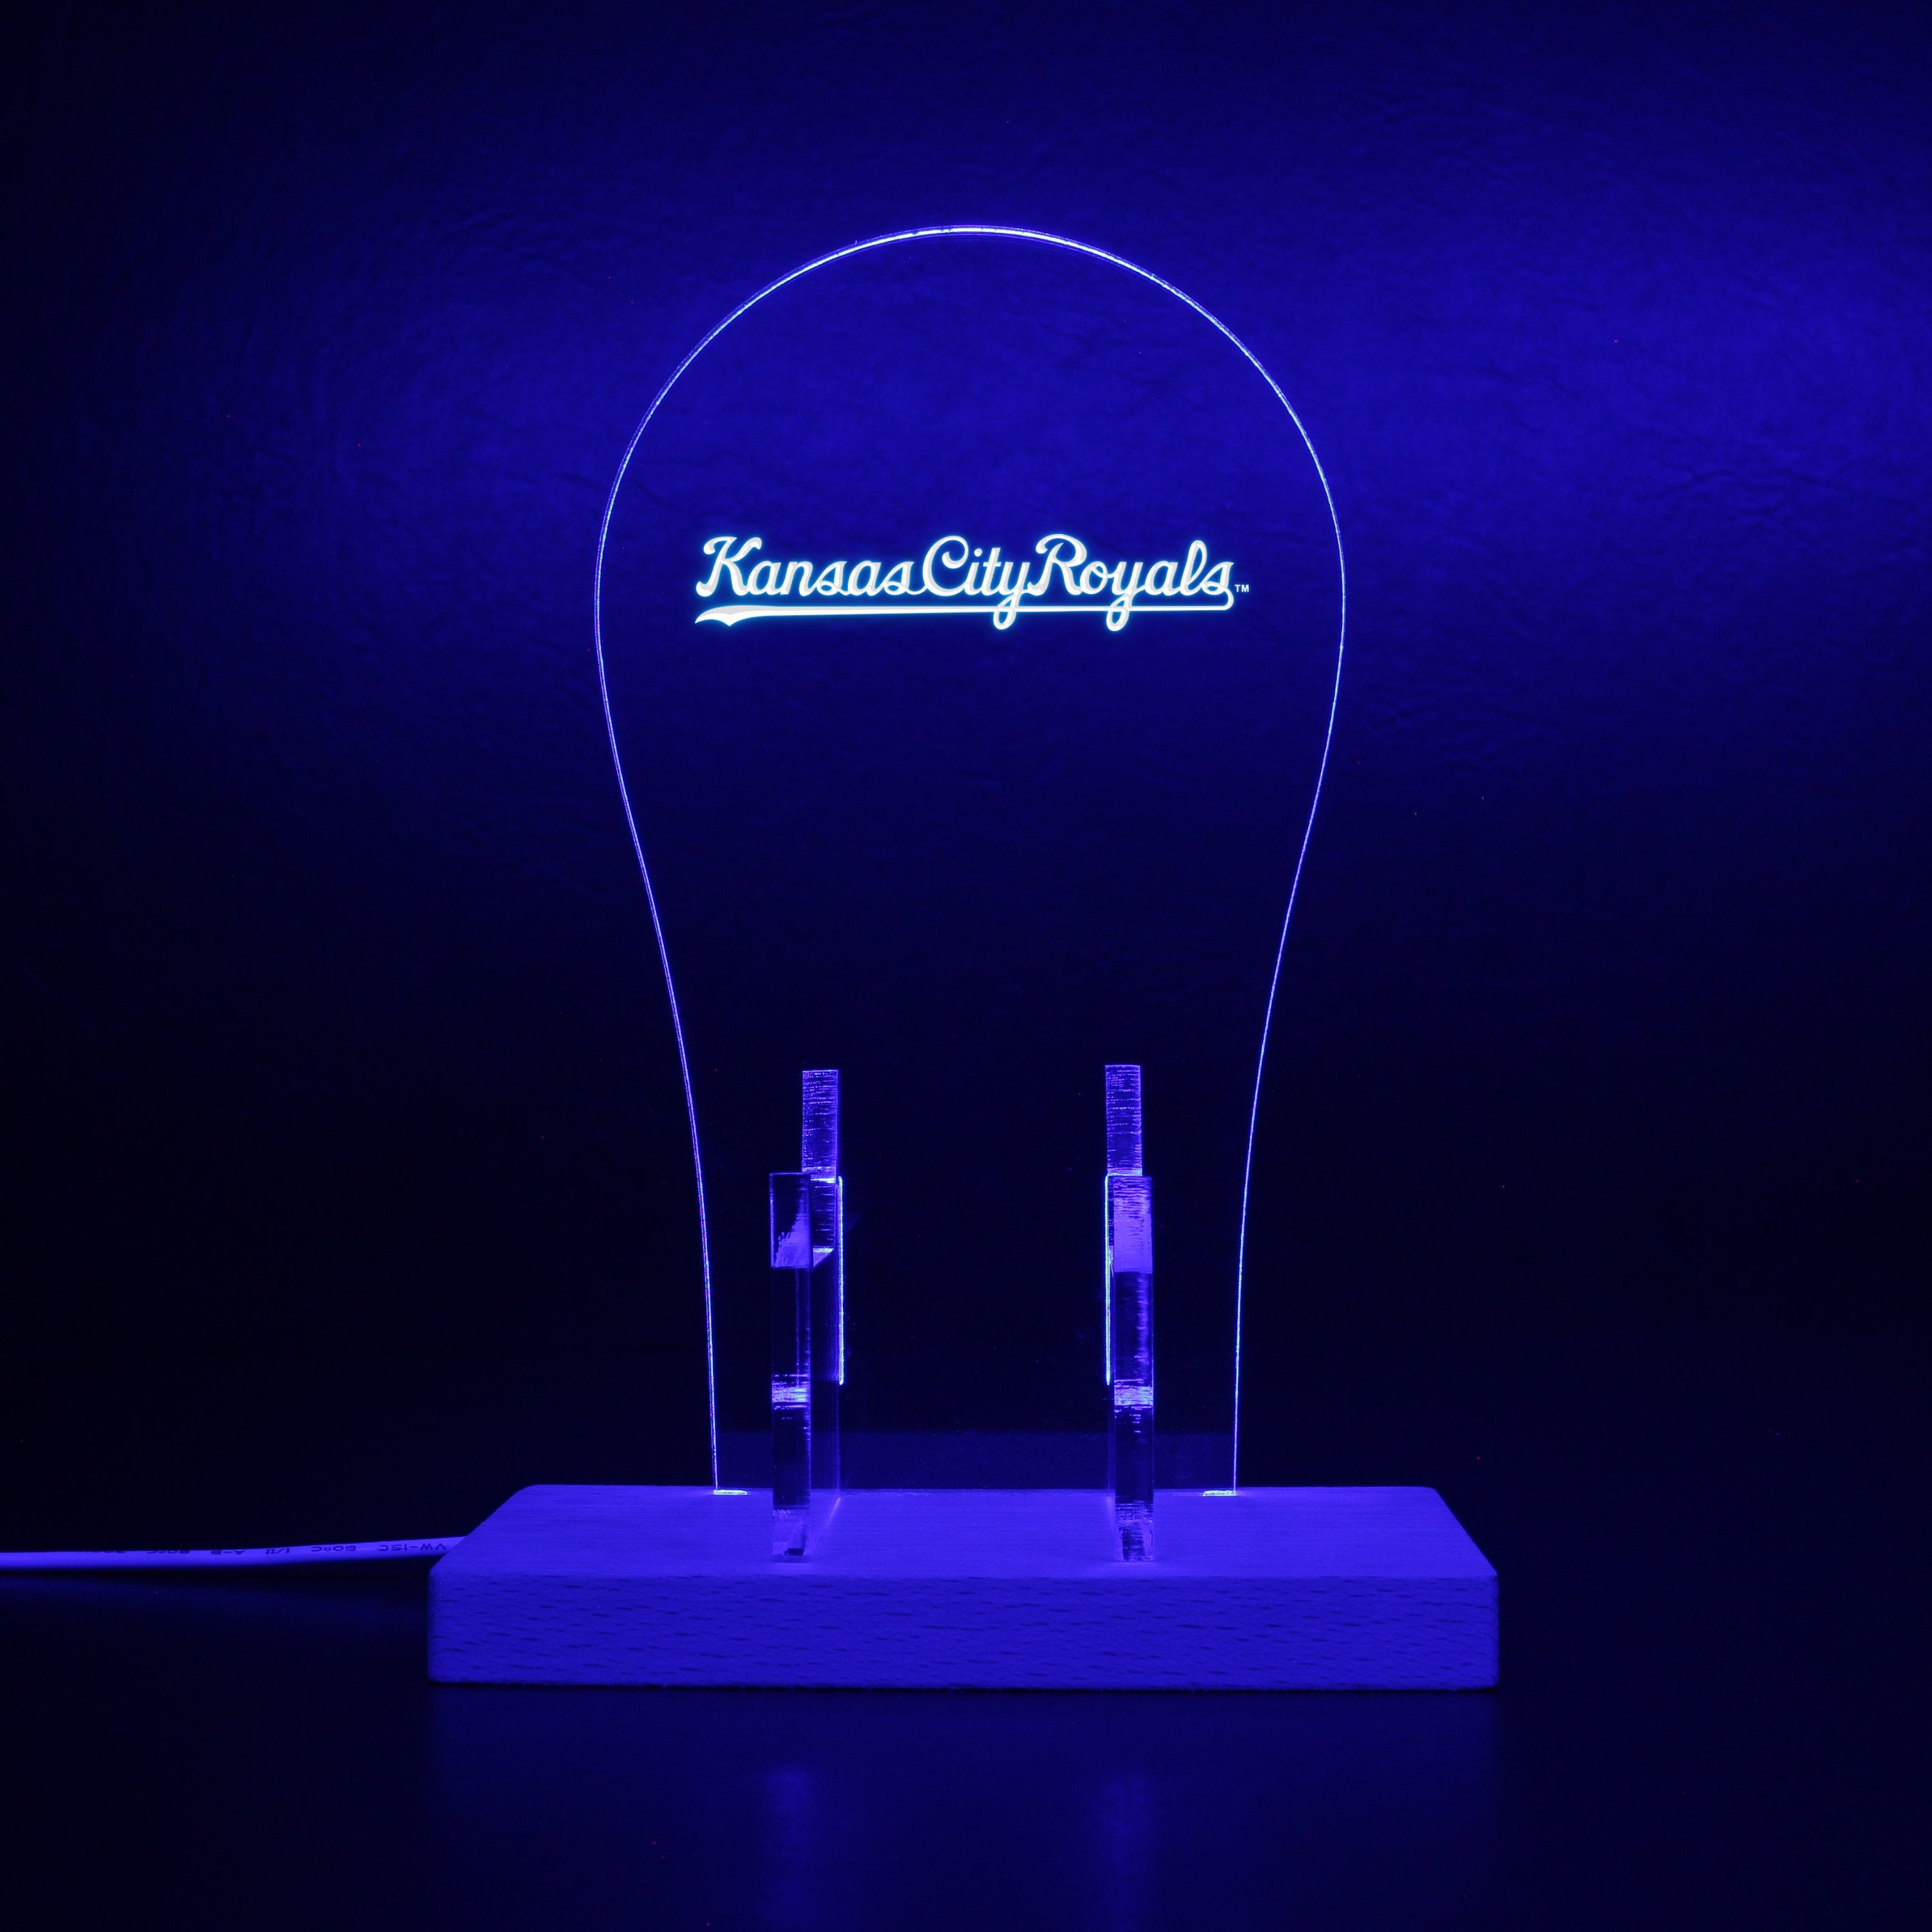 Kansas City Royals Wordmark Logos 1969 - 2001 RGB LED Gaming Headset Controller Stand